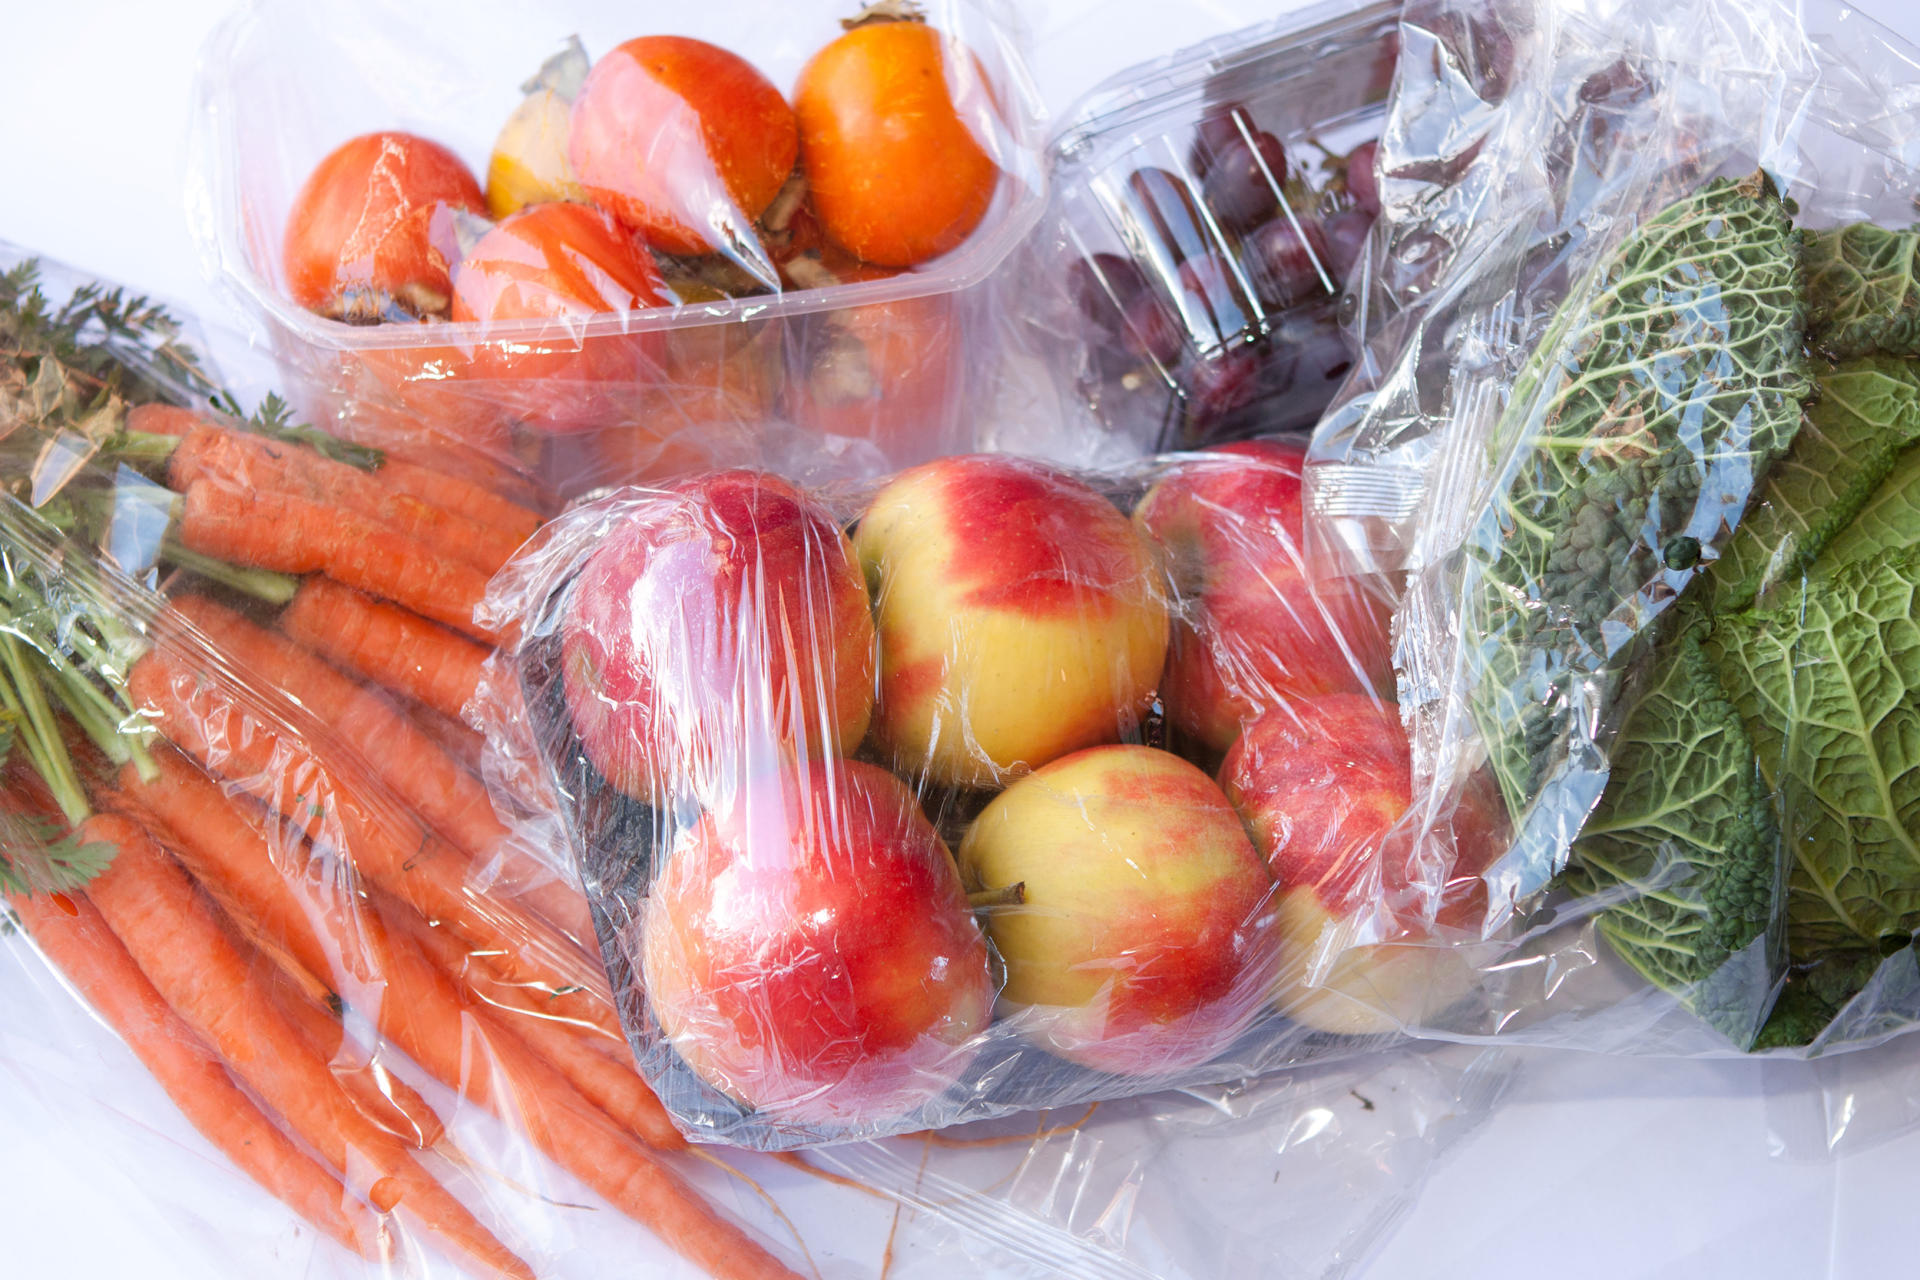 Carottes, tomates, pommes, raisins et choux dans des emballages en plastique.